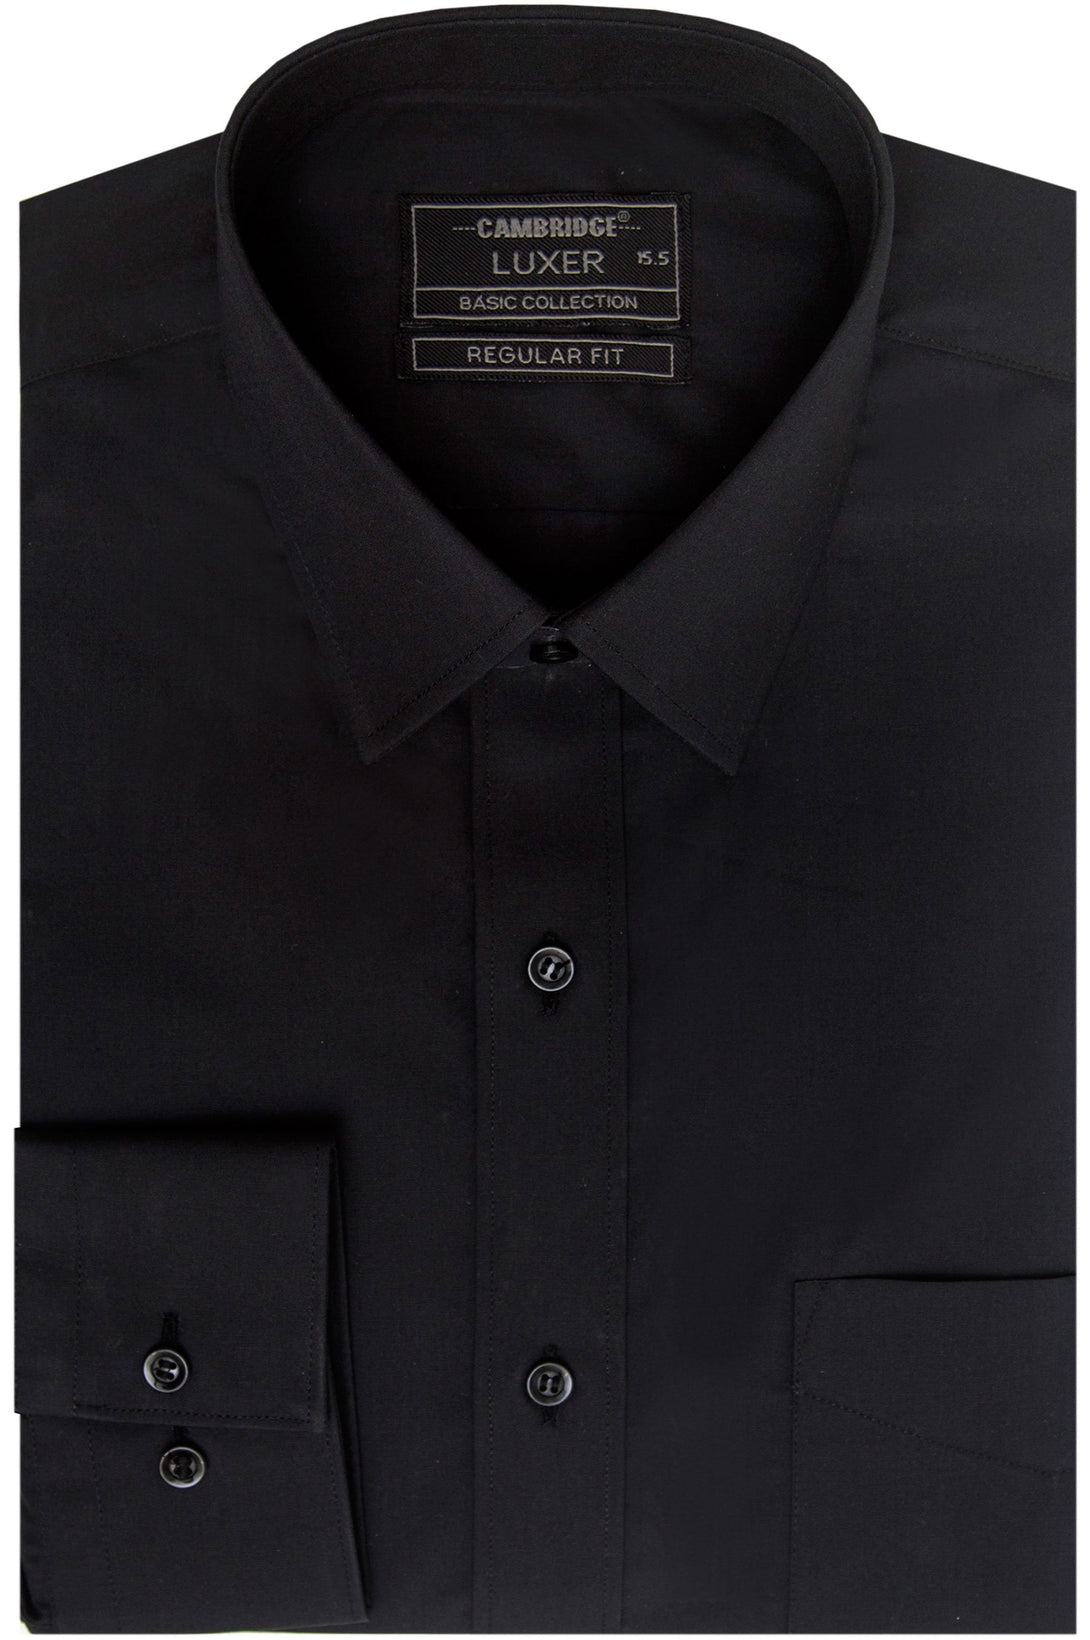 REGULAR FIT DRESS SHIRT- COTTON BLEND FABRIC – Cambridge Shop